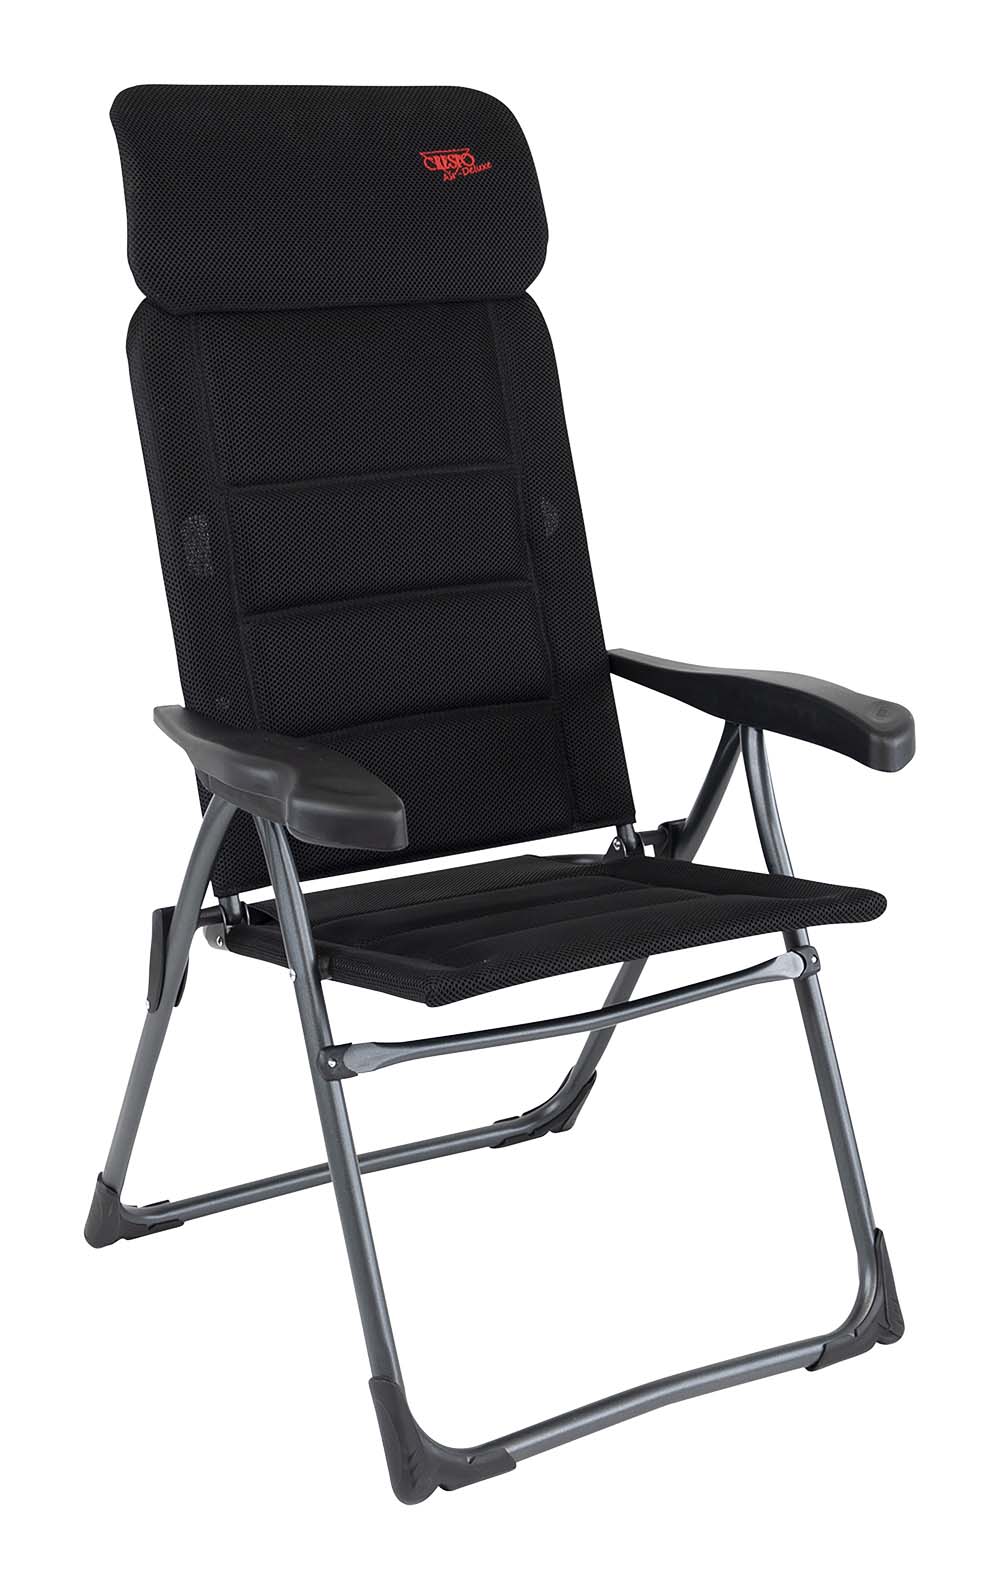 1148012 Een extreem compacte standenstoel. De stoel is zeer plat opvouwbaar, deze stoel wordt ook wel gezien als de meest platte kampeerstoel. Deze stoel biedt maximaal comfort door de in 7 standen verstelbare rugleuning en een traploos verstelbare hoofdsteun. Deze stoel is voorzien van een Air-Deluxe stof. Deze comfortabele stof is zeer onderhoudsvriendelijk, heeft een open celstructuur en is daardoor lucht en waterdoorlatend. Hierdoor is de stoel veel sneller droog dan stoelen met een traditionele schuimvulling. De stoel is voorzien van een U-frame met stabilisatoren en extra dikke buizen voor extra stevigheid en stabiliteit. Deze stoel is door de inschuifbare hoofdsteun extra compact op te bergen. Tot 50% minder pakvolume in vergelijking met andere kampeerstoelen! De stoel is van hoogstaande kwaliteit met TÜV Keurmerk.